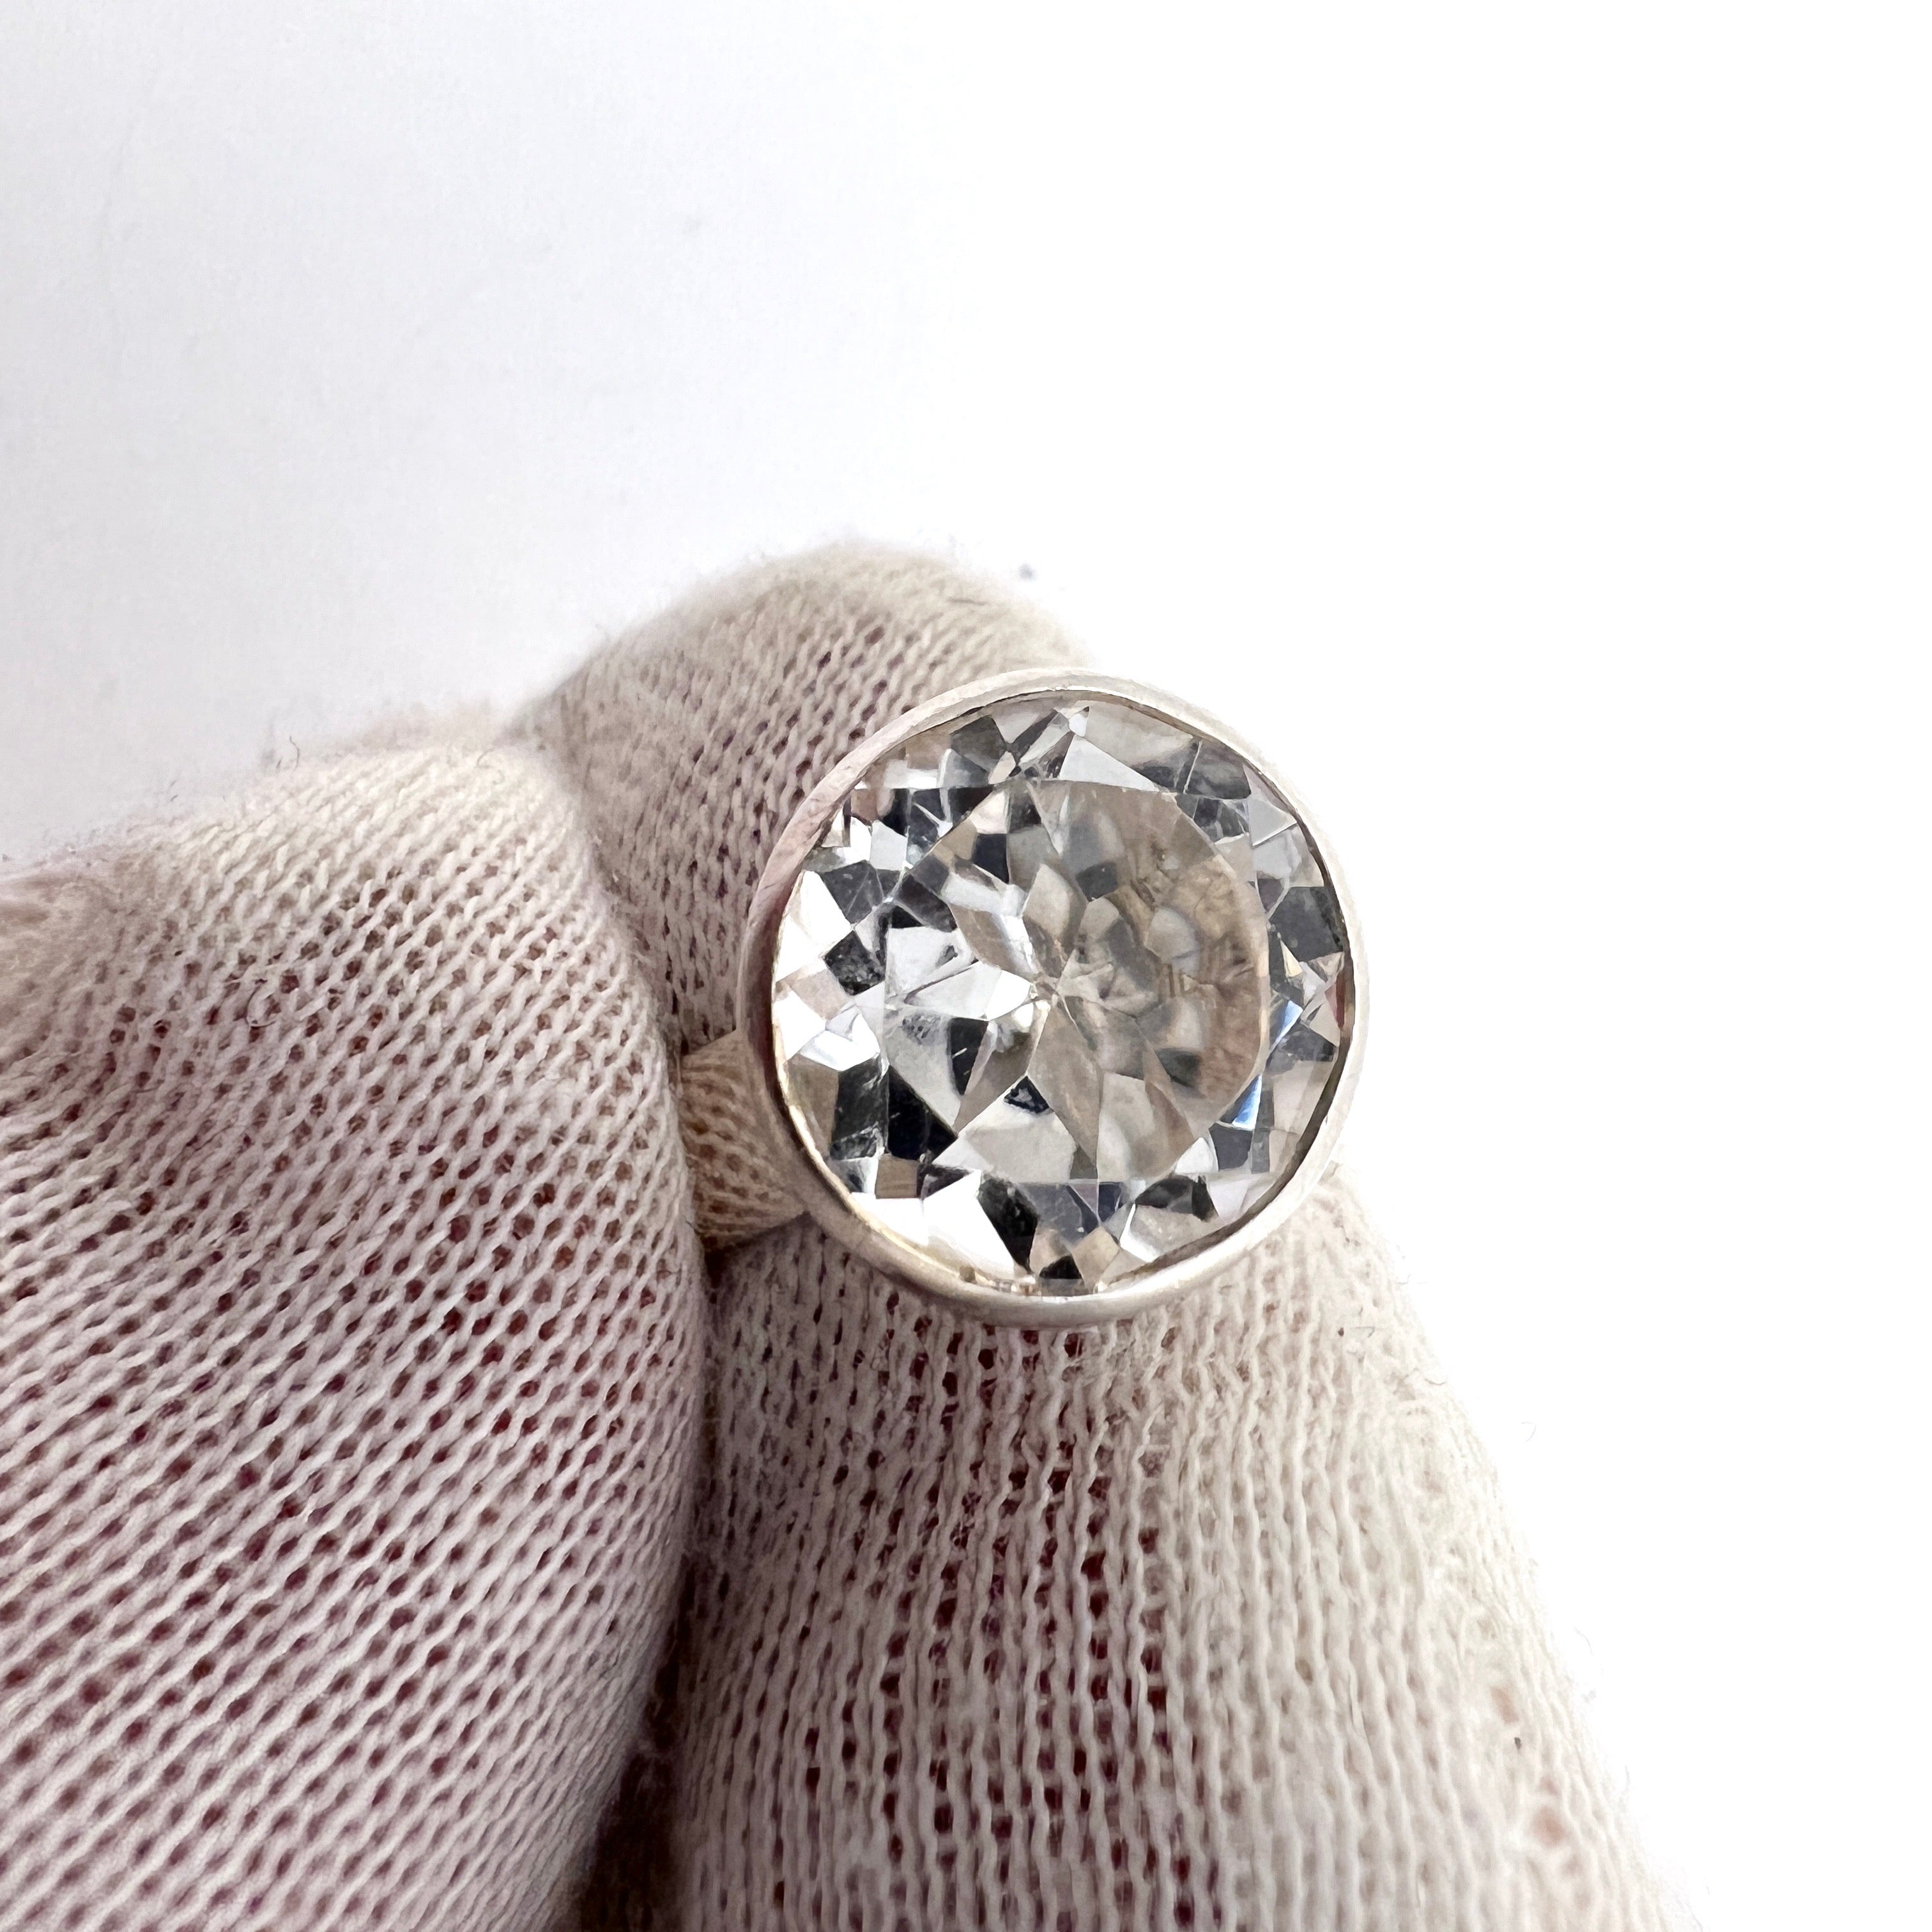 Bengt Hallberg, Sweden 1972 VIntage Sterling Silver Rock Crystal Adjustable Size Ring.